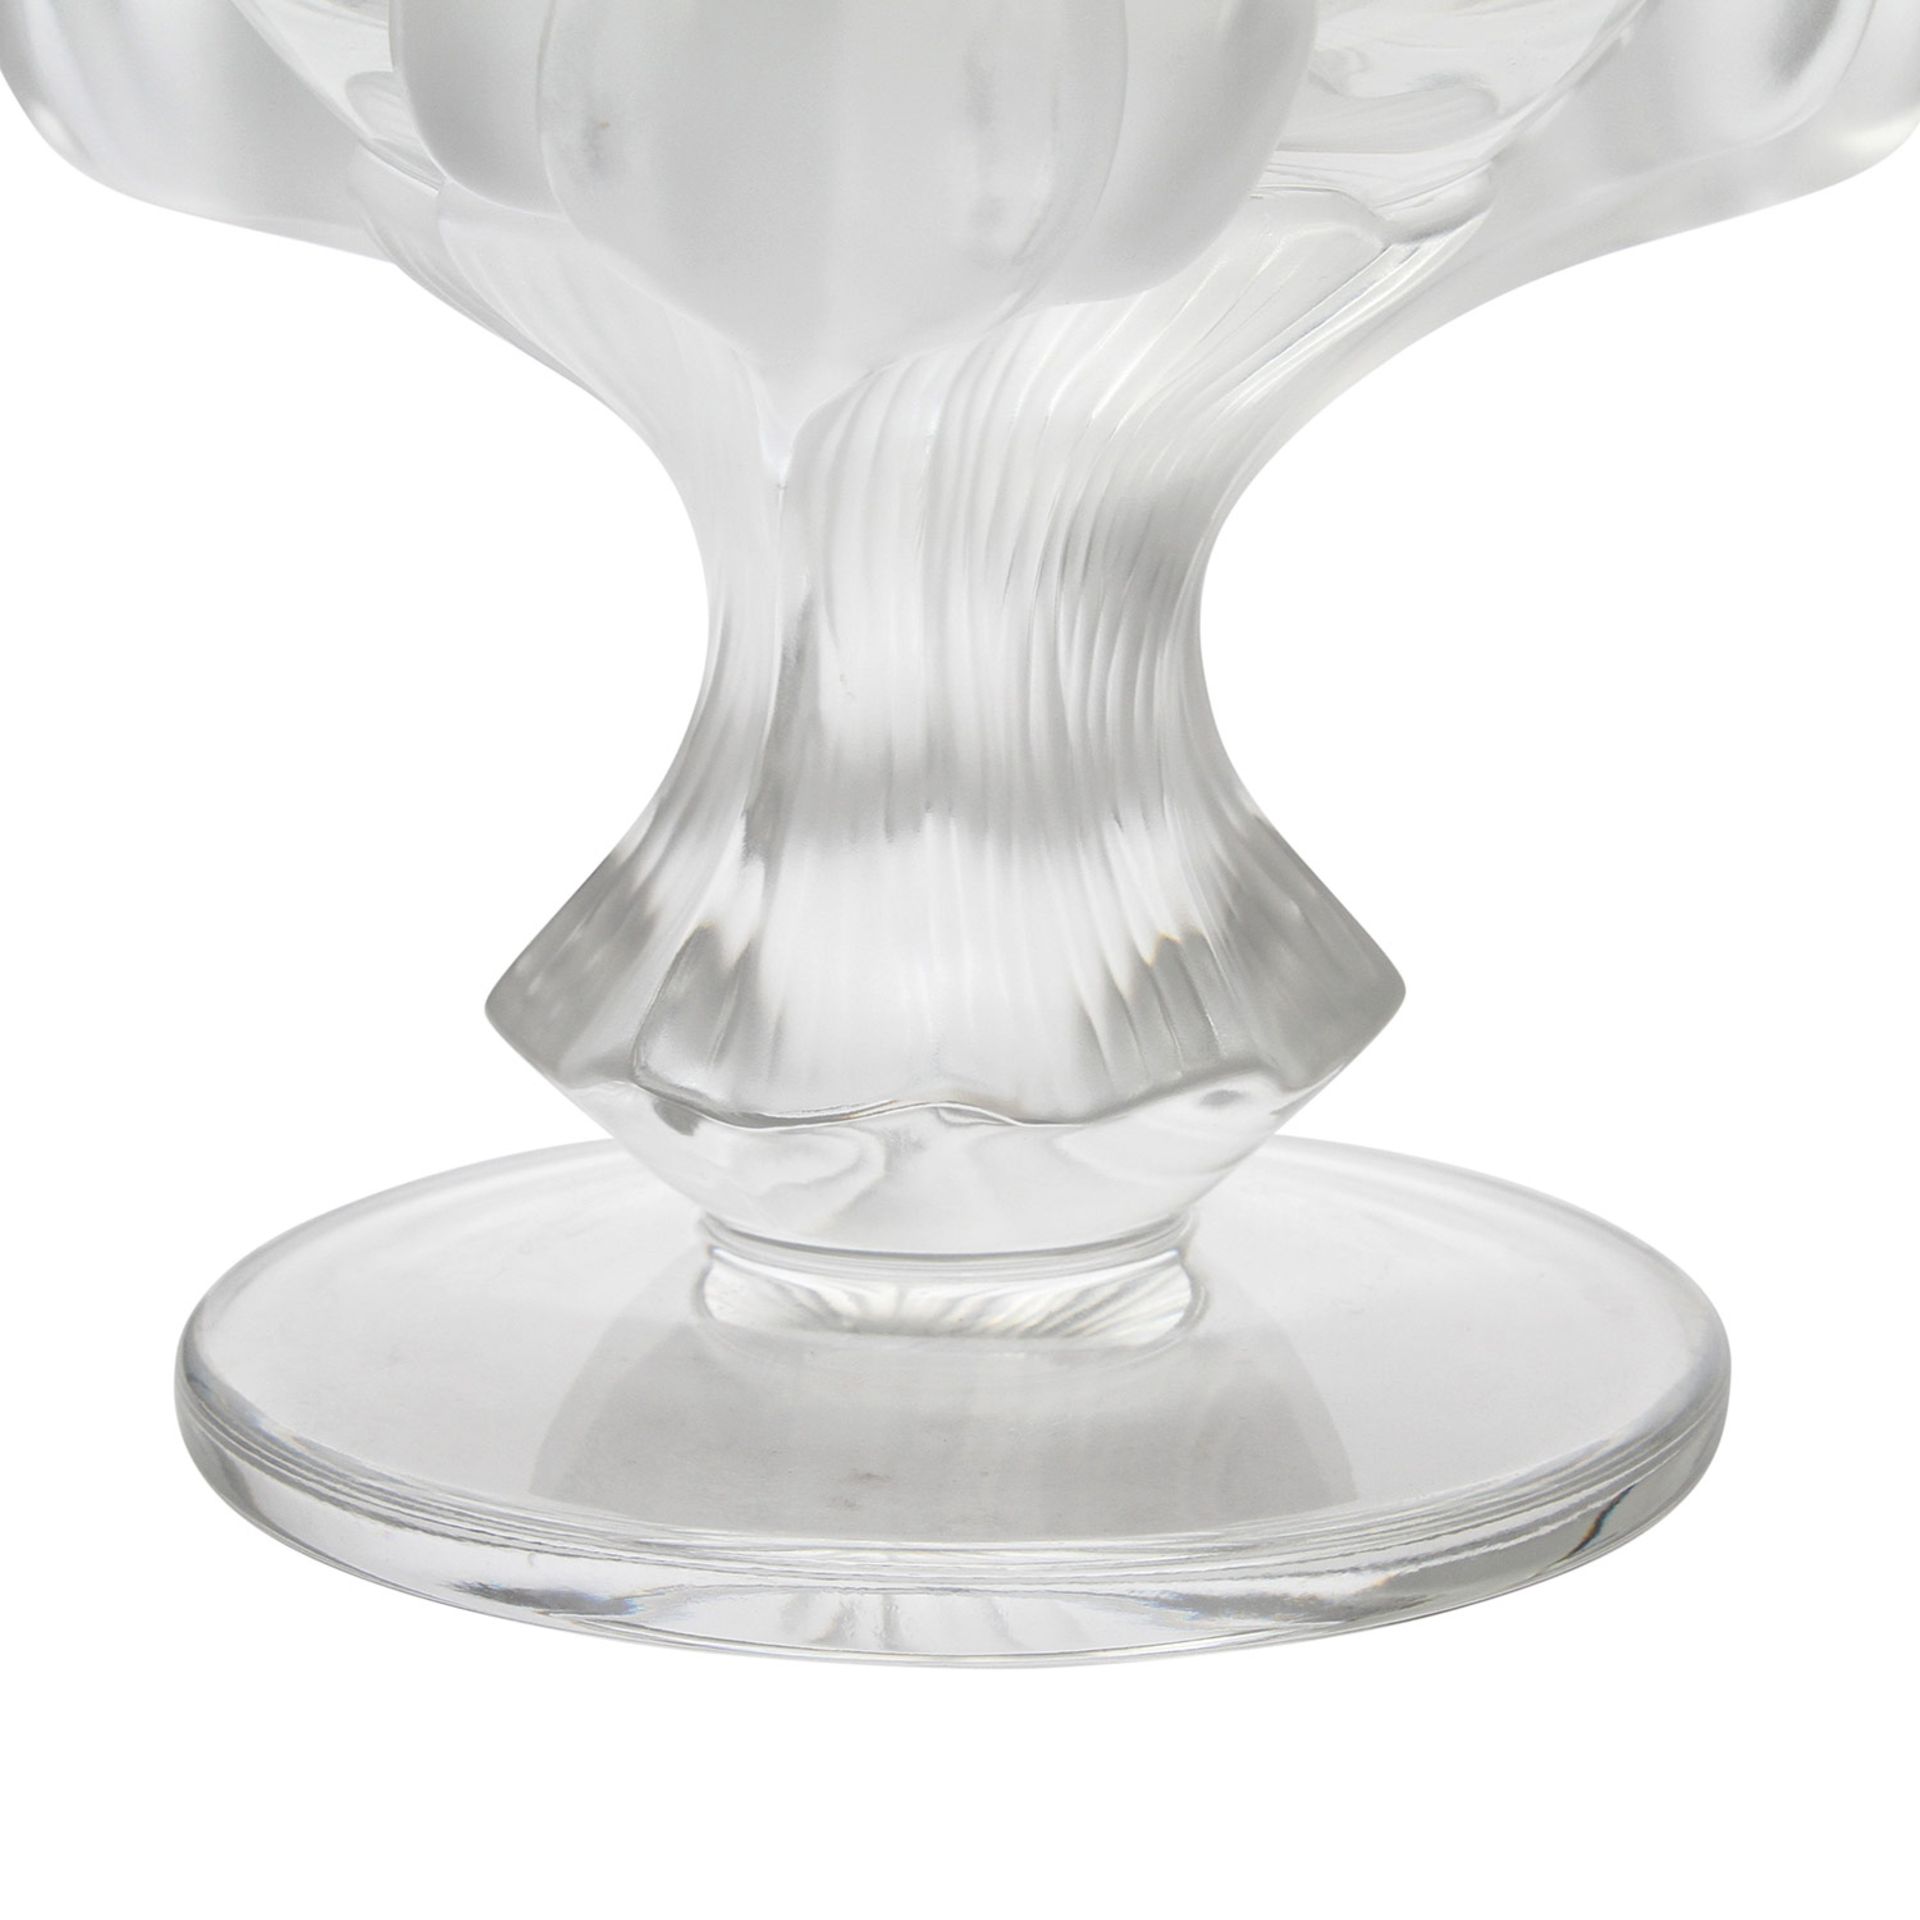 LALIQUE GLASPOKAL Frankreich, farbloses Kristallglas, von drei satinierten Klauenfüßen getragene, - Image 4 of 7